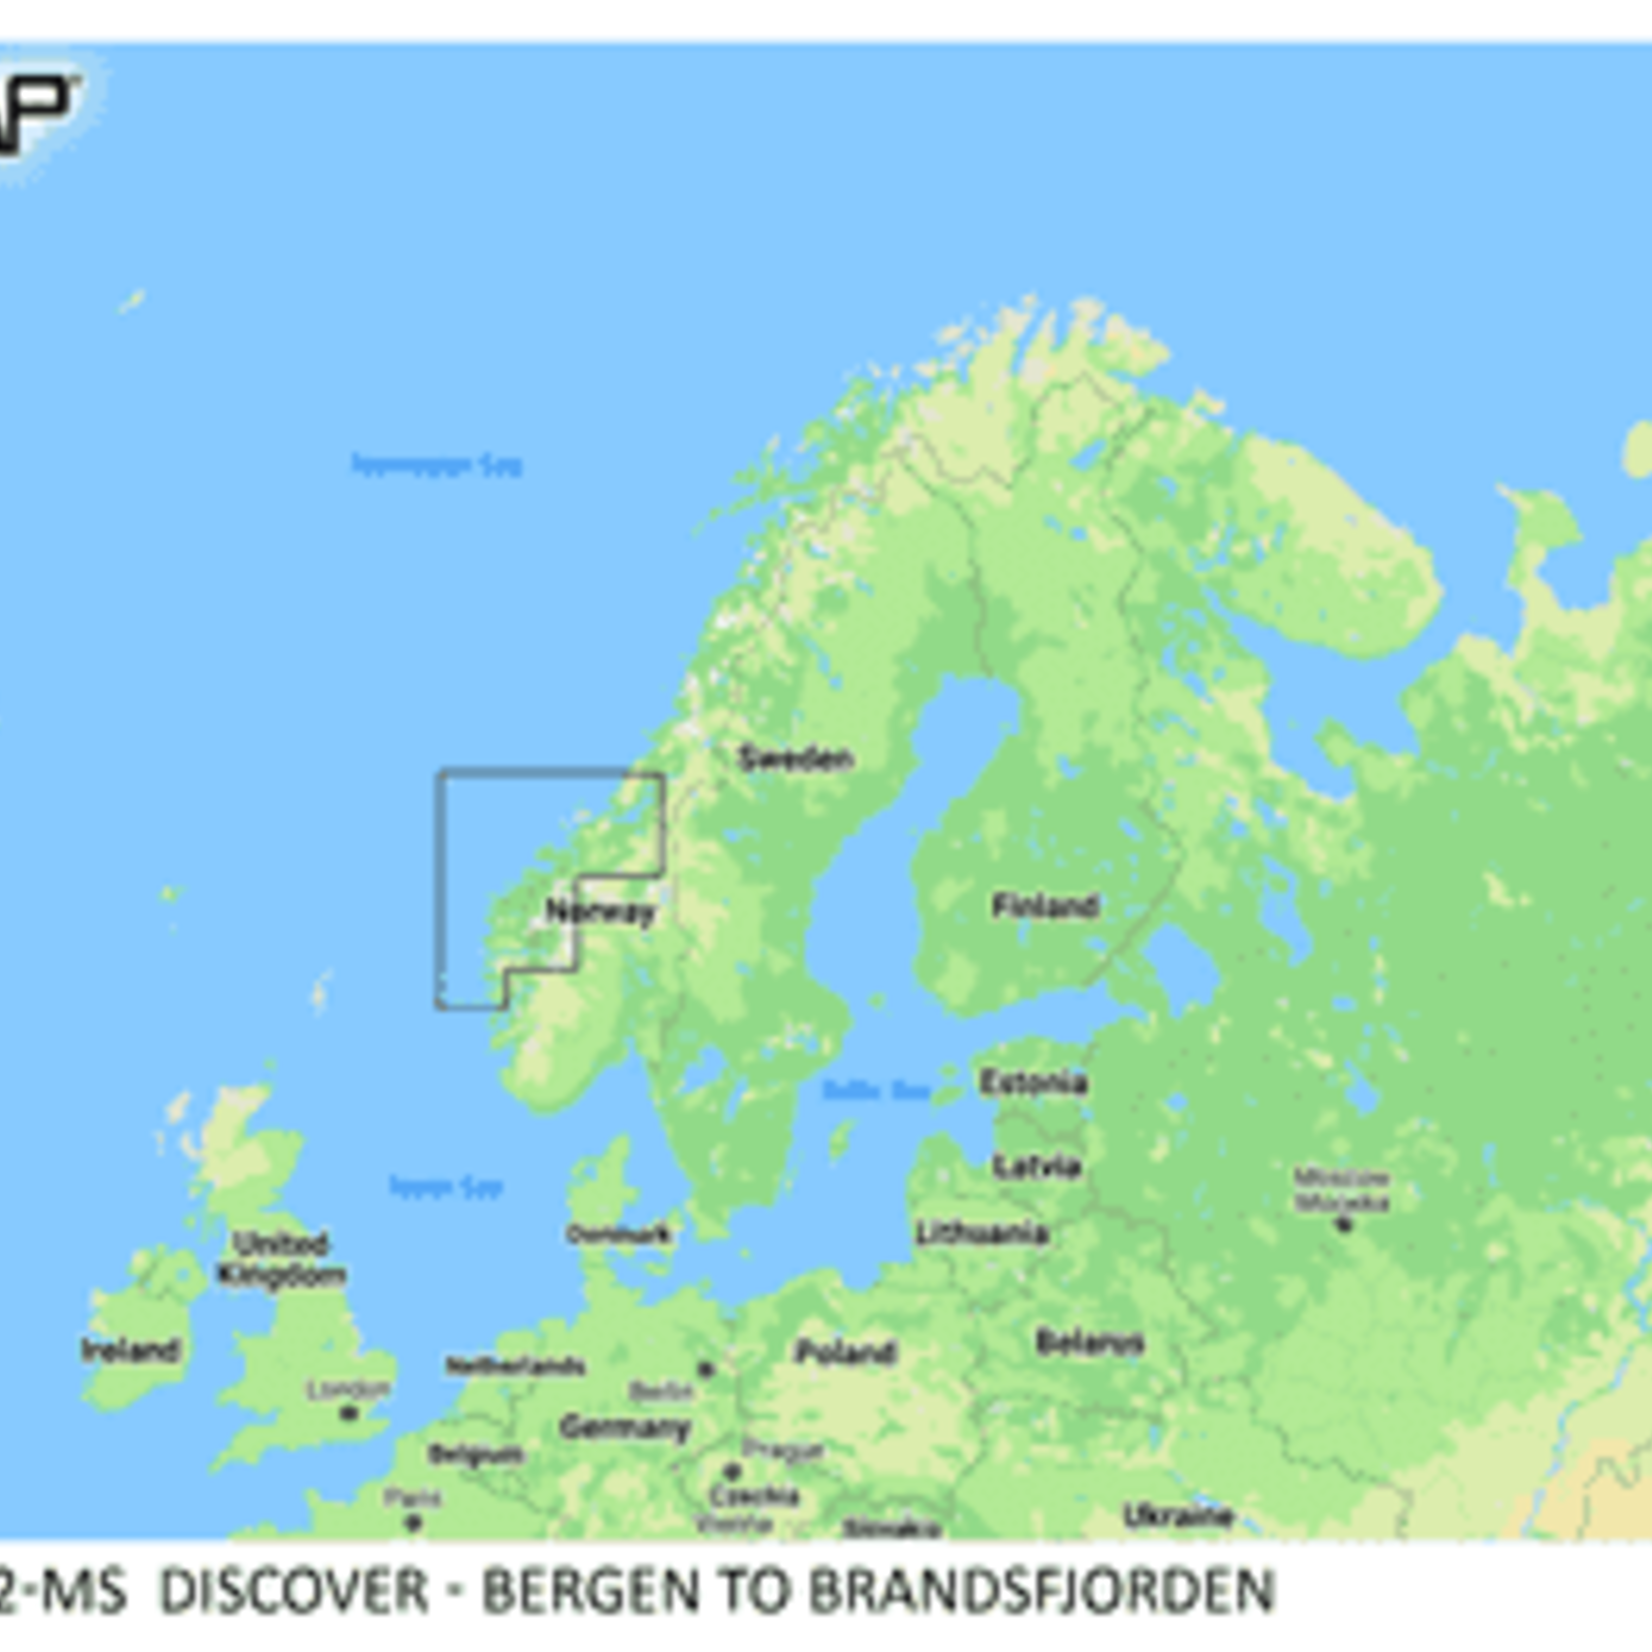 C-MAP DISCOVER - Bergen to Brandsfjorden